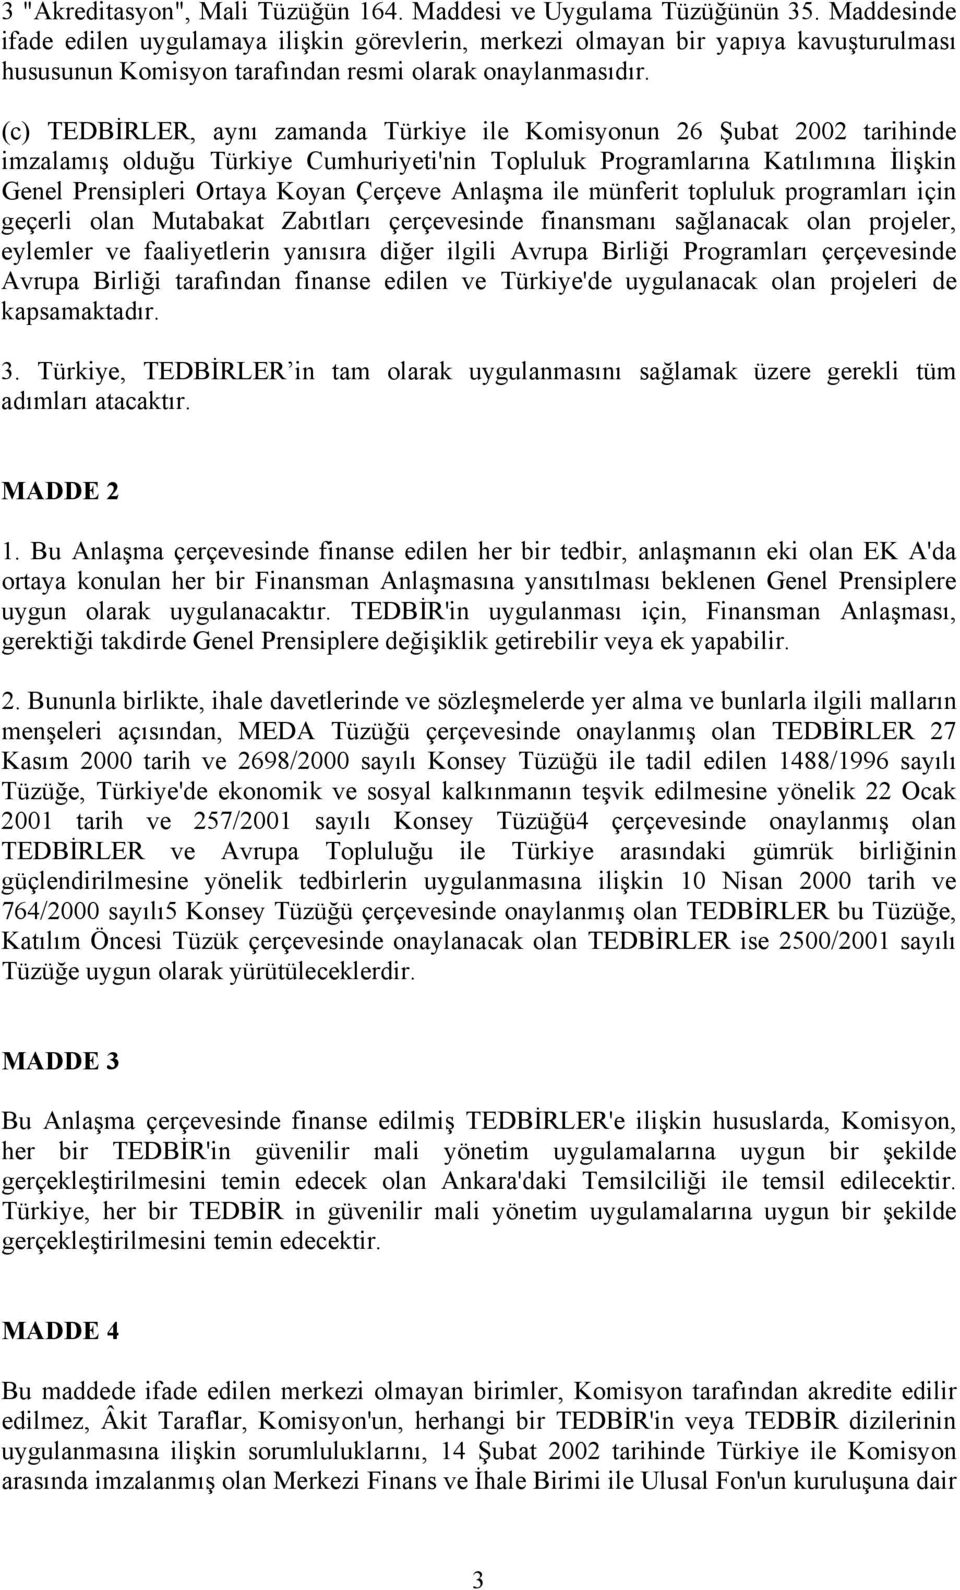 (c) TEDBİRLER, aynı zamanda Türkiye ile Komisyonun 26 Şubat 2002 tarihinde imzalamış olduğu Türkiye Cumhuriyeti'nin Topluluk Programlarına Katılımına İlişkin Genel Prensipleri Ortaya Koyan Çerçeve